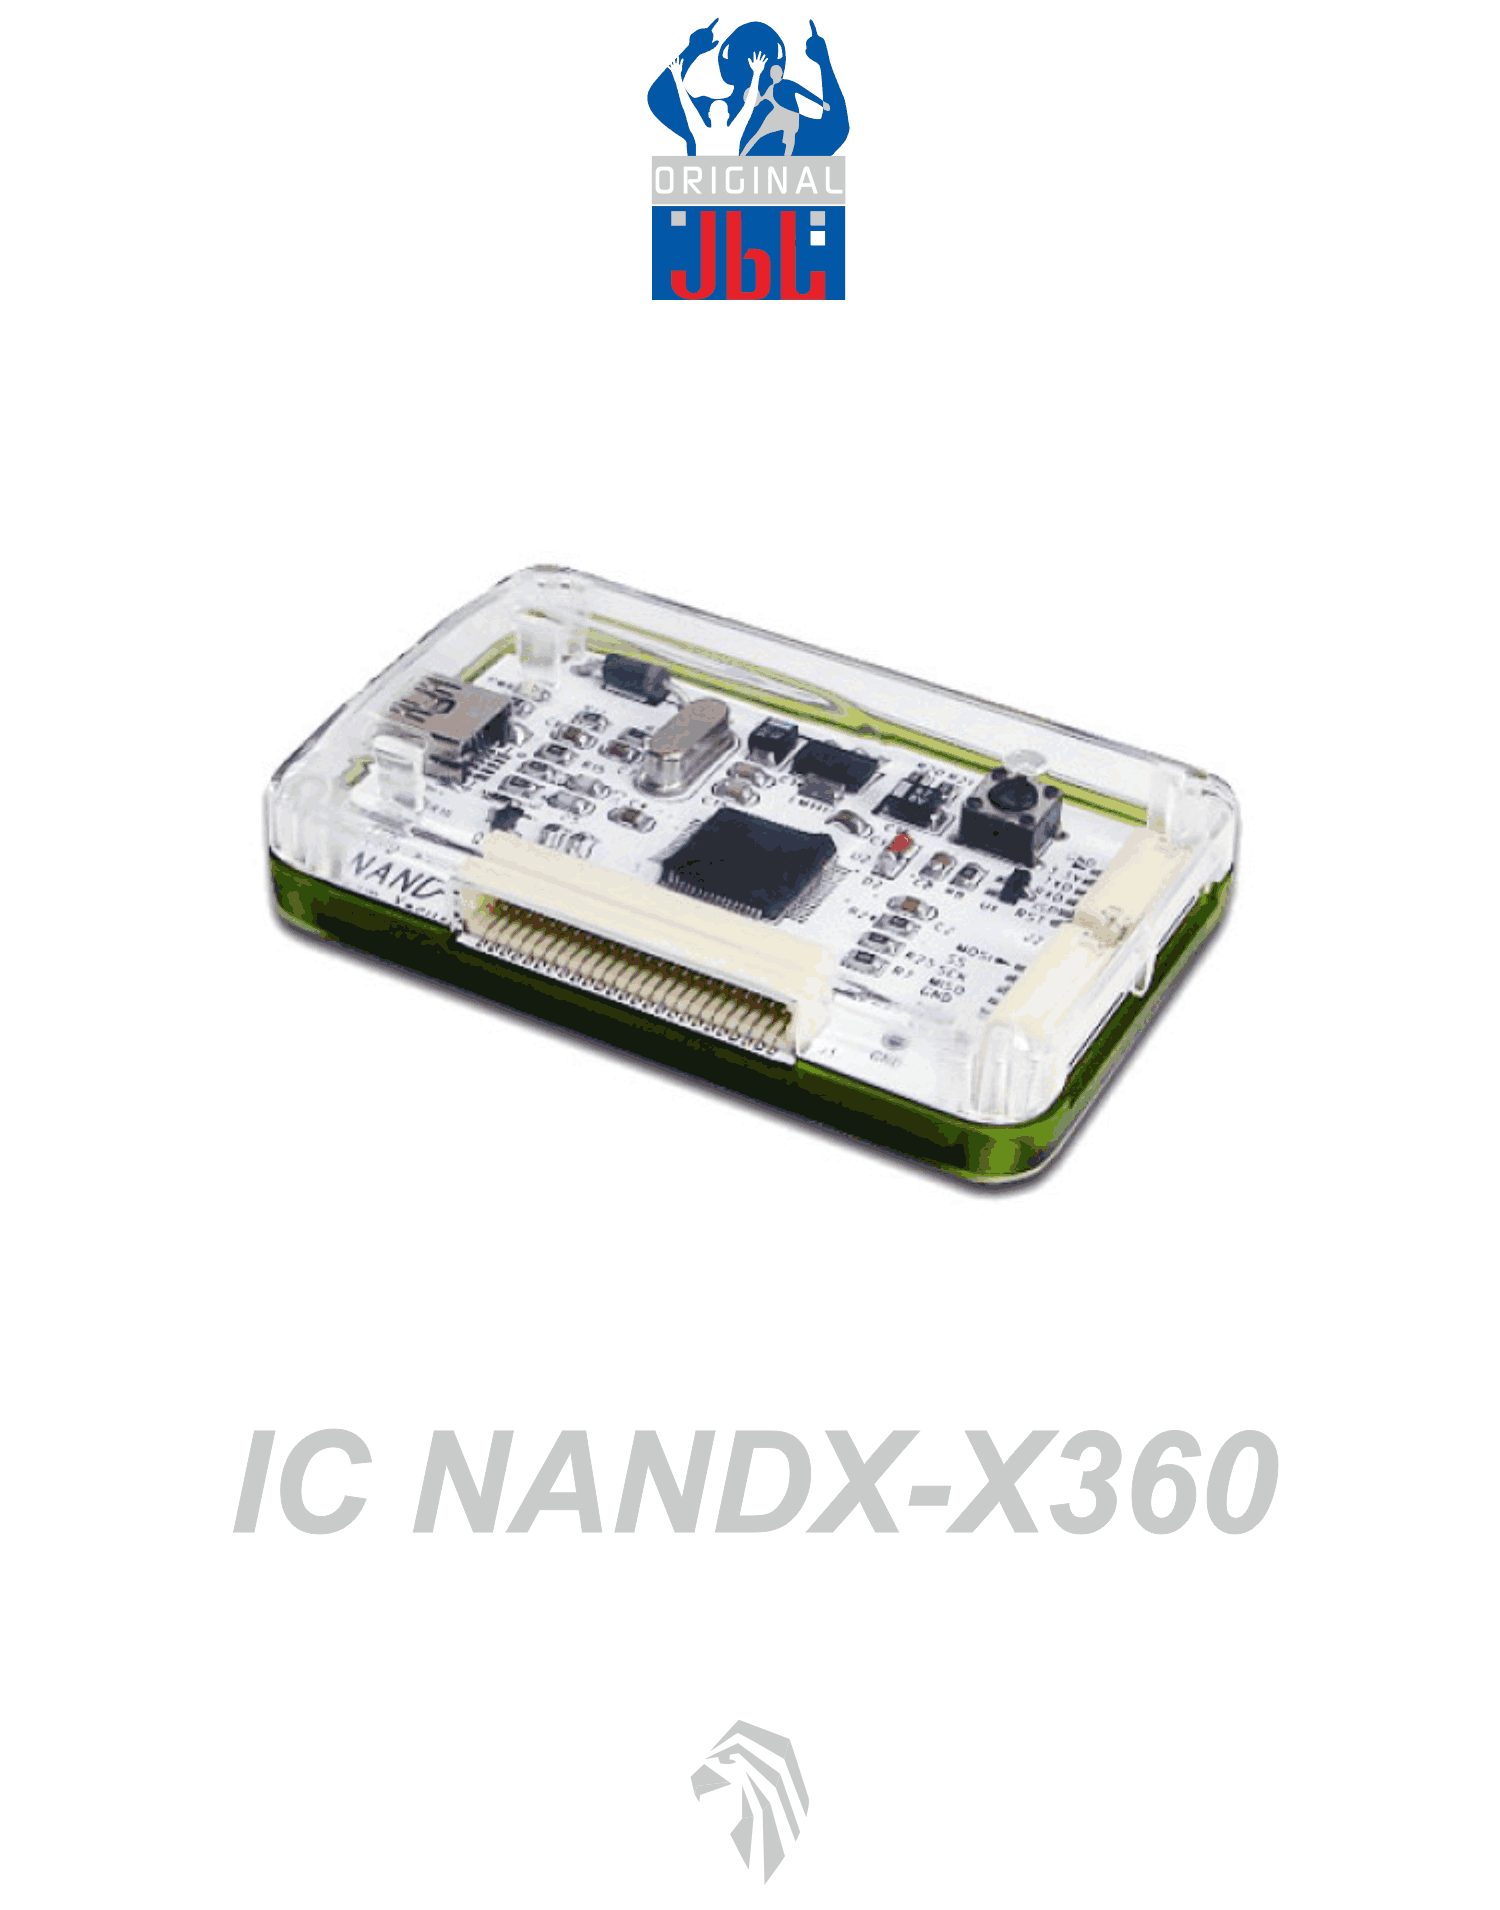  آی سی کپی  XBOX360 NANDX